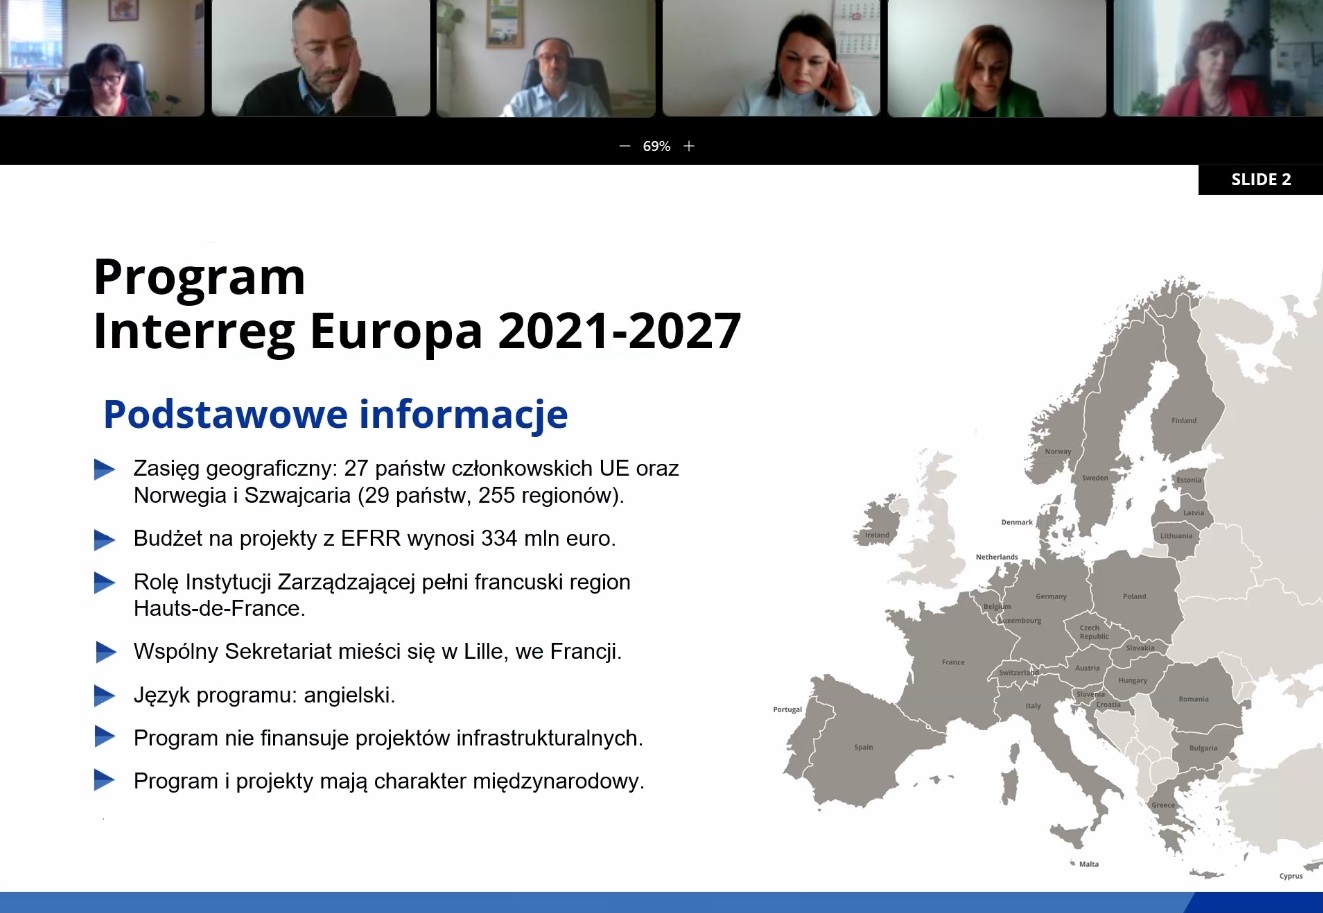 Członek zespołu projektowego przedstawia prezentację ogólnych zasad Programu Interreg Europa 2021-2027